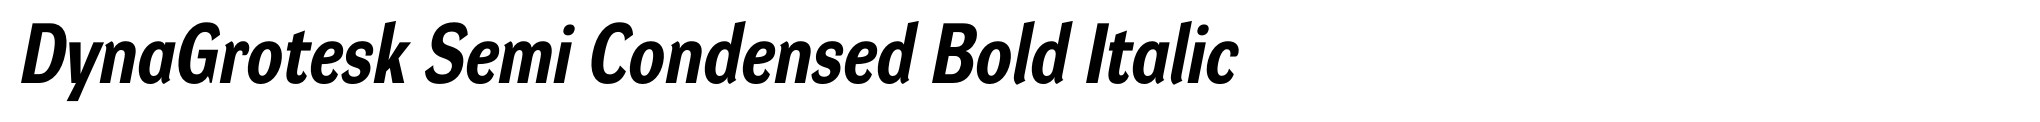 DynaGrotesk Semi Condensed Bold Italic image